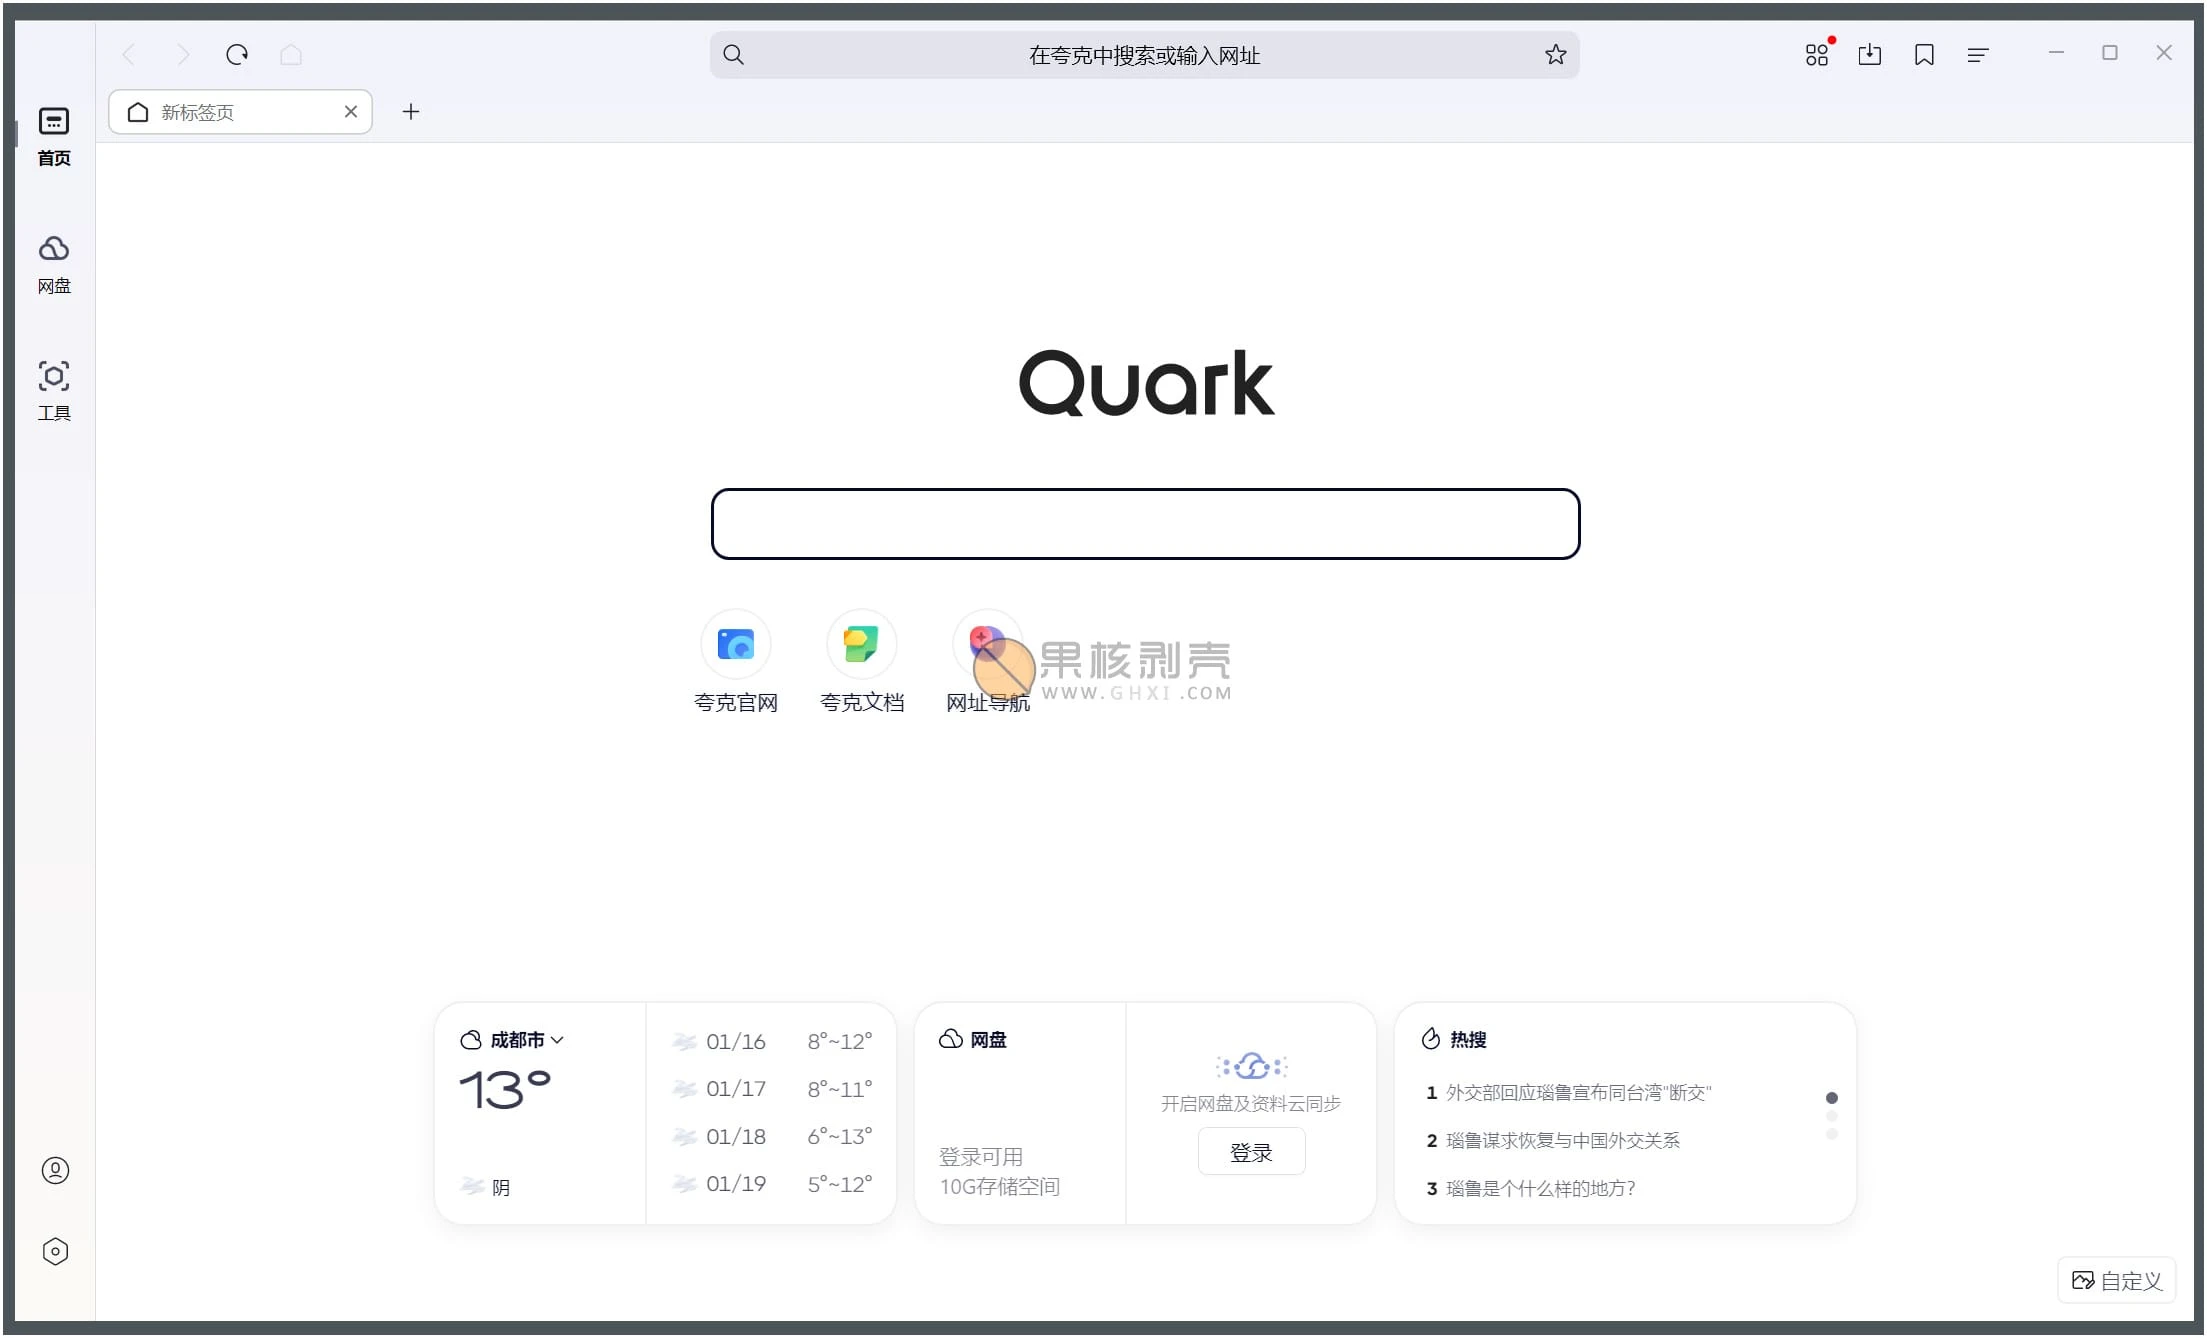 夸克 (QuarkPC) 电脑版 v1.0.5.9 - 果核剥壳